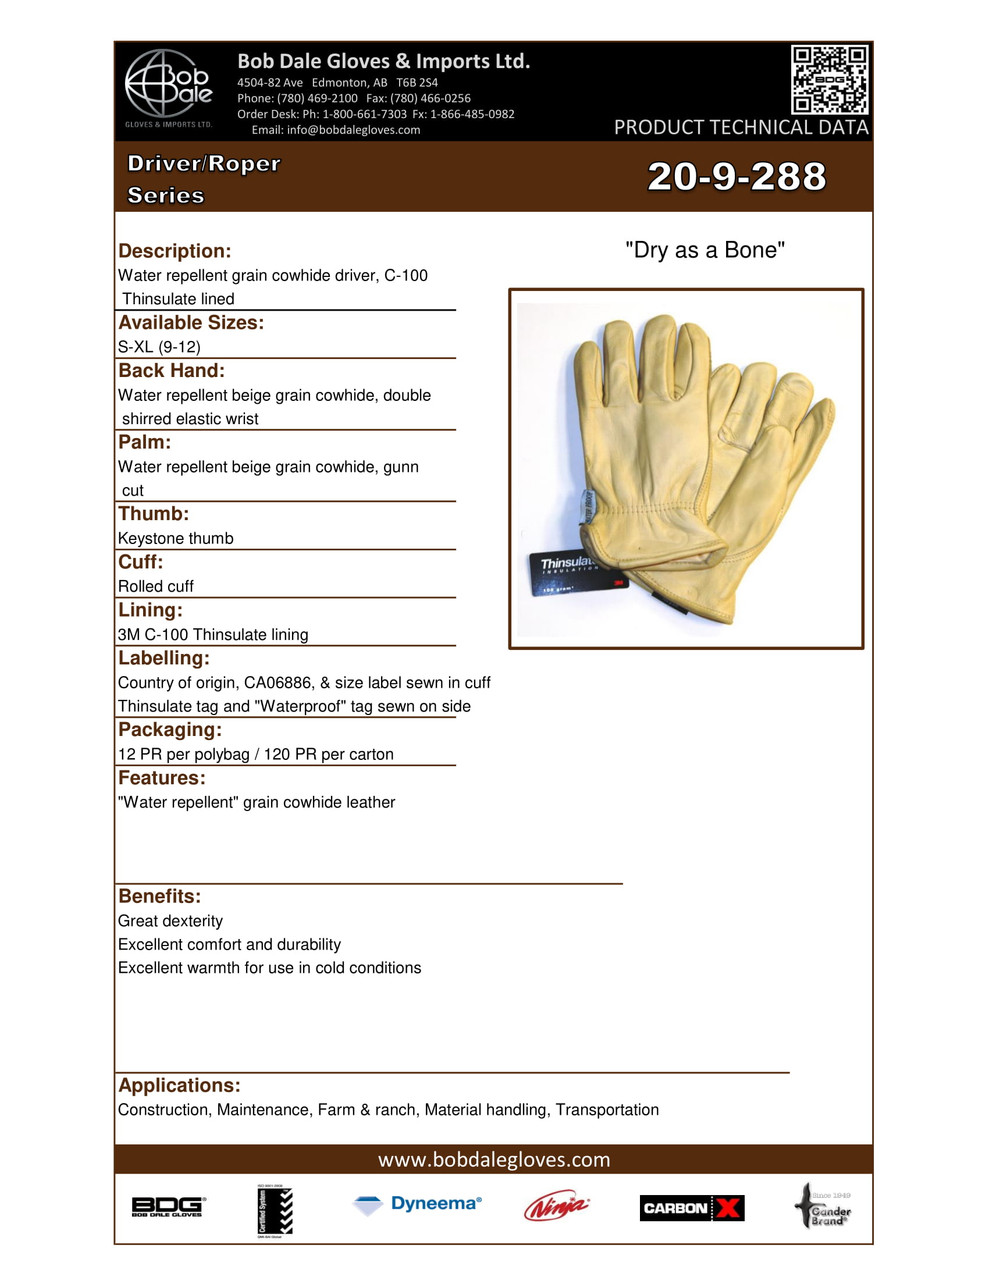 Winter Grain Cowhide Roper "Dry As A Bone" Thinsulate® C100 Keystone Thumb  20-9-288